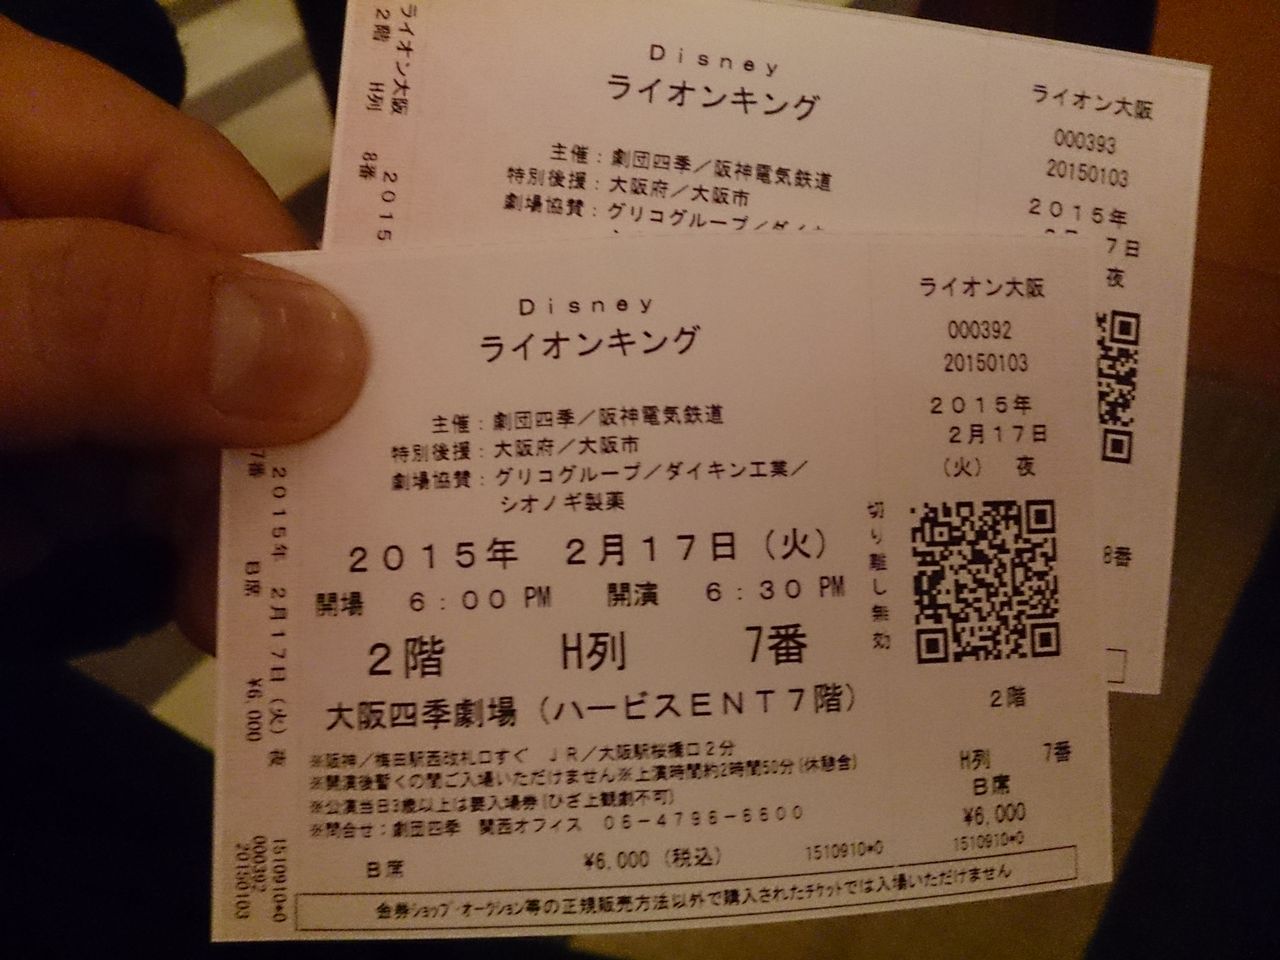 劇団四季 大阪 ライオンキング 2 17 火 18 30公演 マダムみどりのひまつぶし